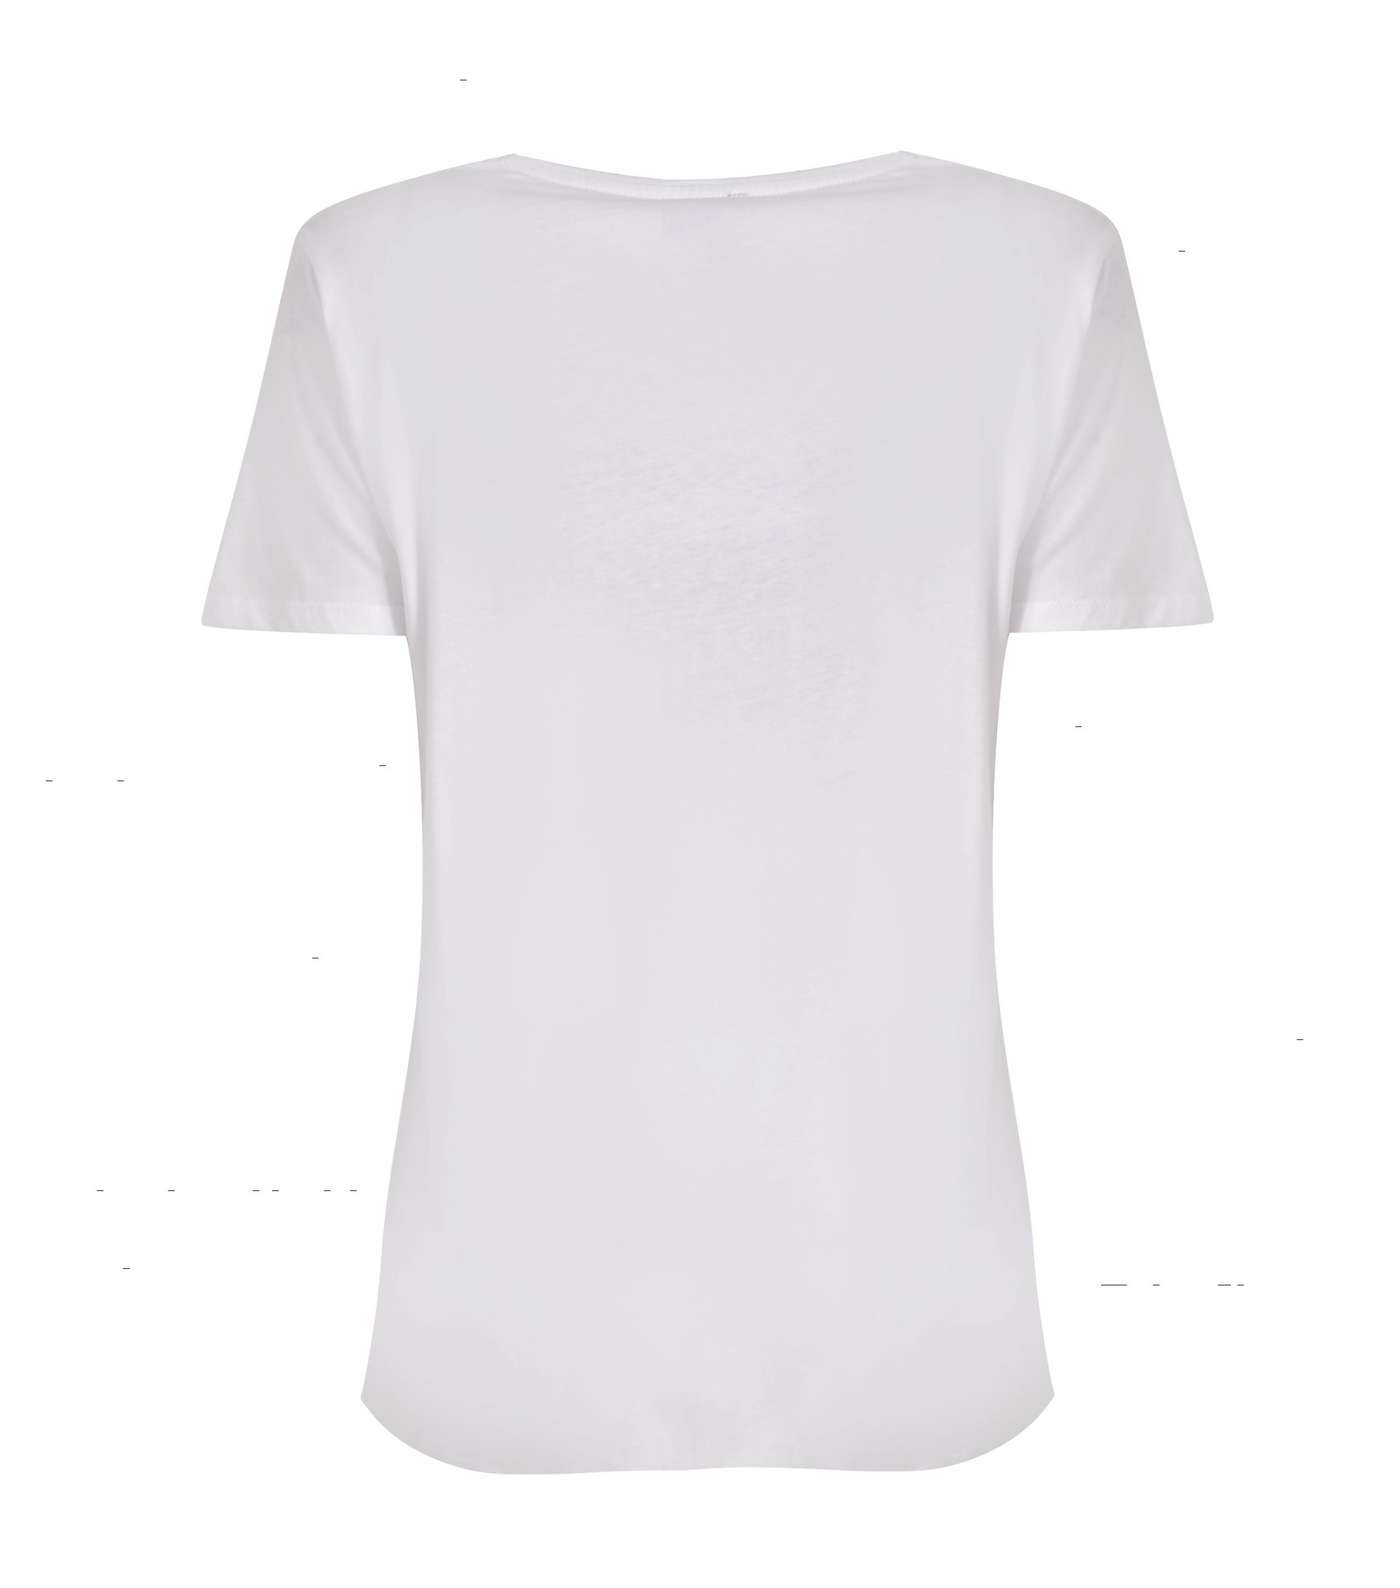 Tall White Je T'aime Paris Heart Slogan T-Shirt Image 2